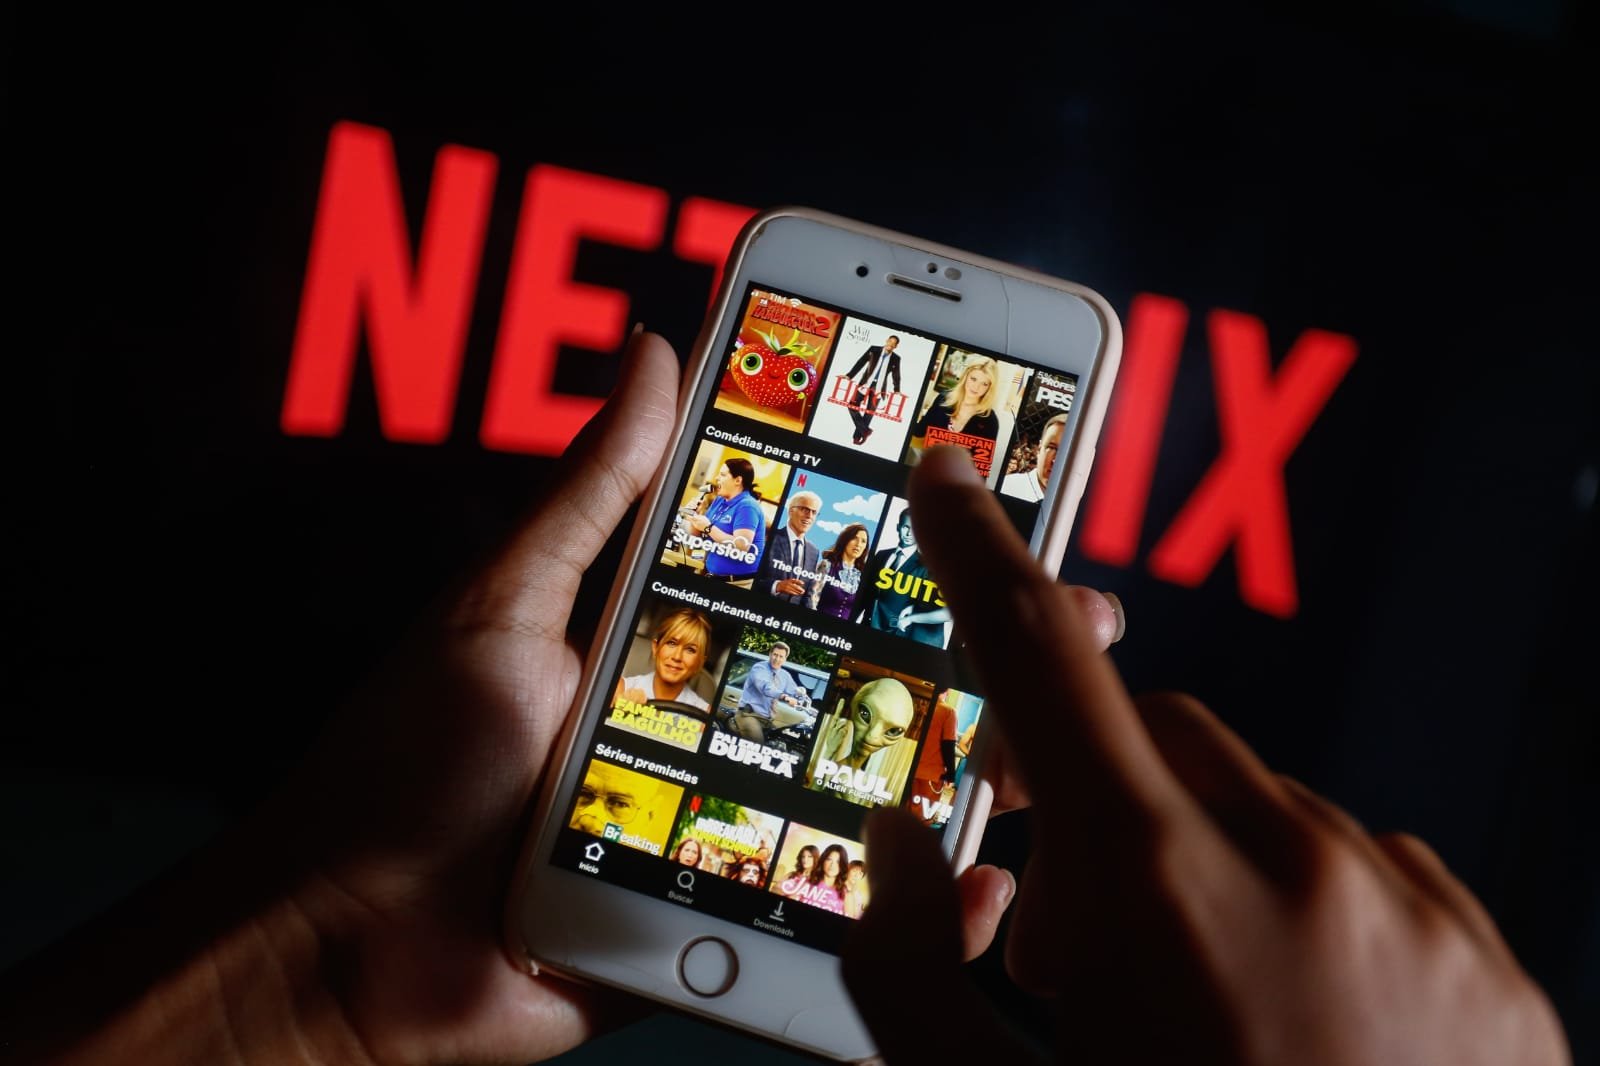 Netflix estuda barrar conta de quem compartilha senha